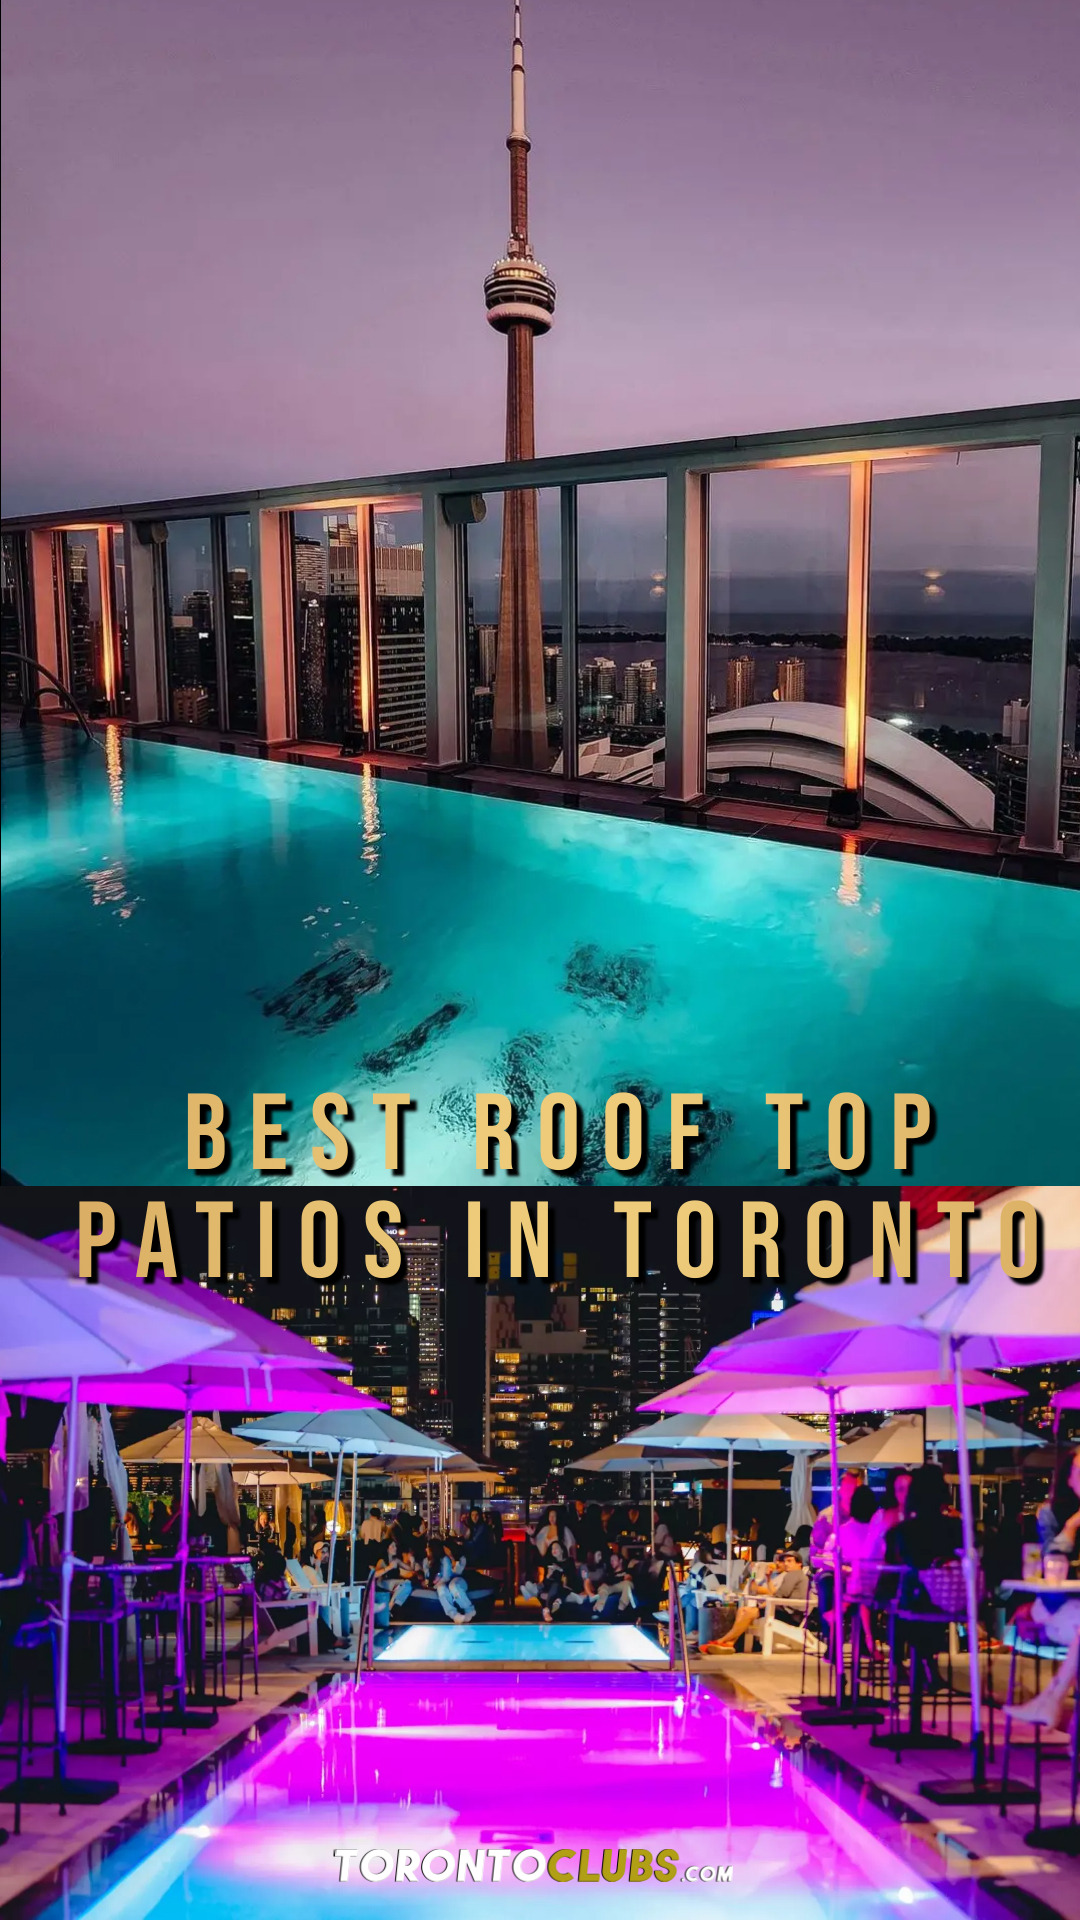 10 Best Roof Top Patios in Toronto